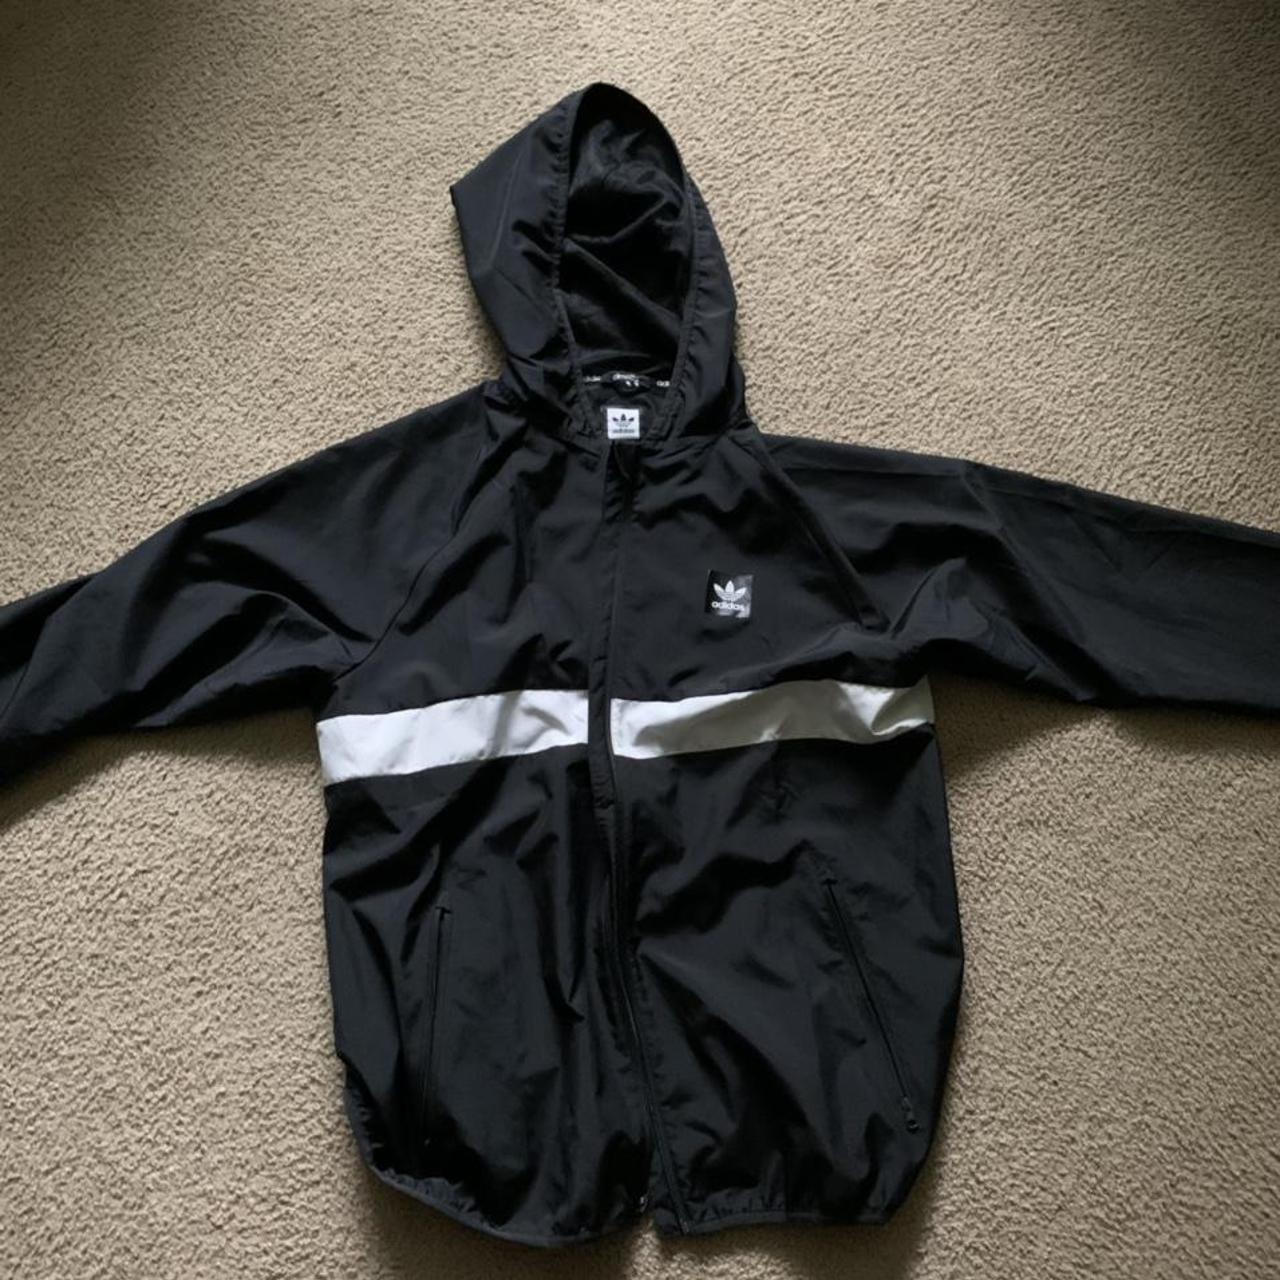 Product Image 1 - Adidas spring jacket
Light jacket, worn